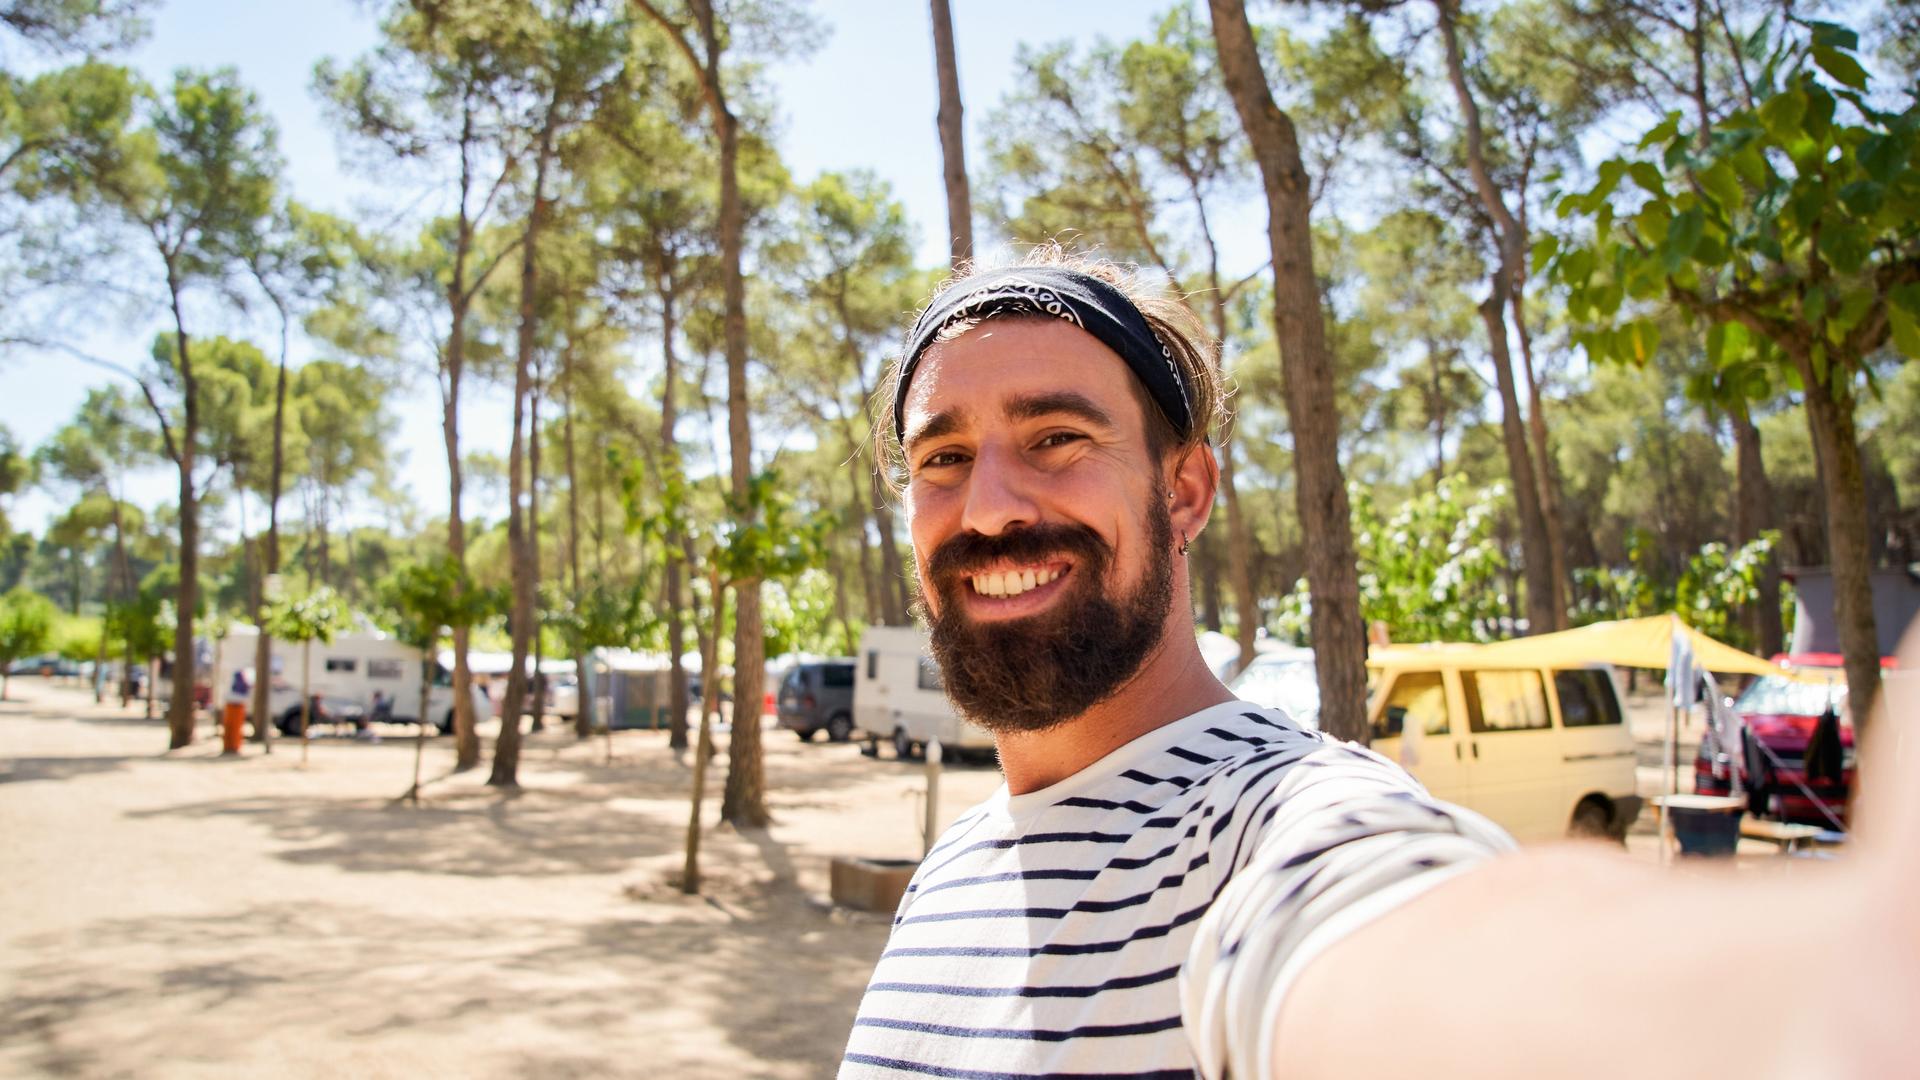 Ein fröhlicher junger Mann mit Vollbart und gestreiftem T-Shirt macht ein Selfie auf einem Campingplatz mit Wohnmobilen in einem Kiefernwald.